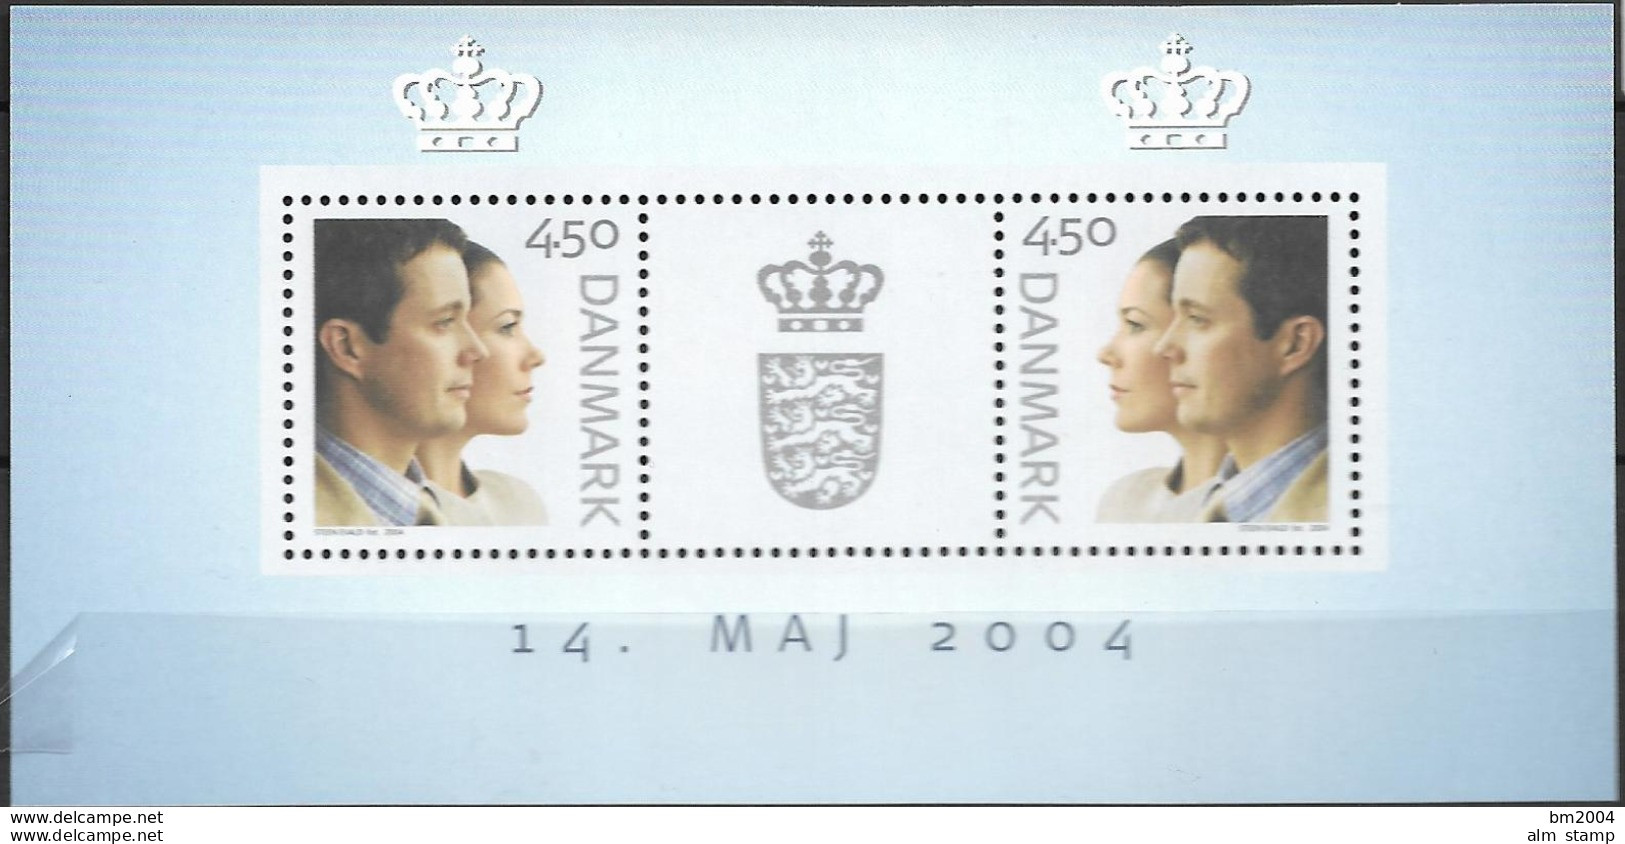 2004 Dänemark Mi. Bl. 23 **MNH  Hochzeit Von Kronprinz Frederik Und Mary Donaldson - Blocks & Kleinbögen